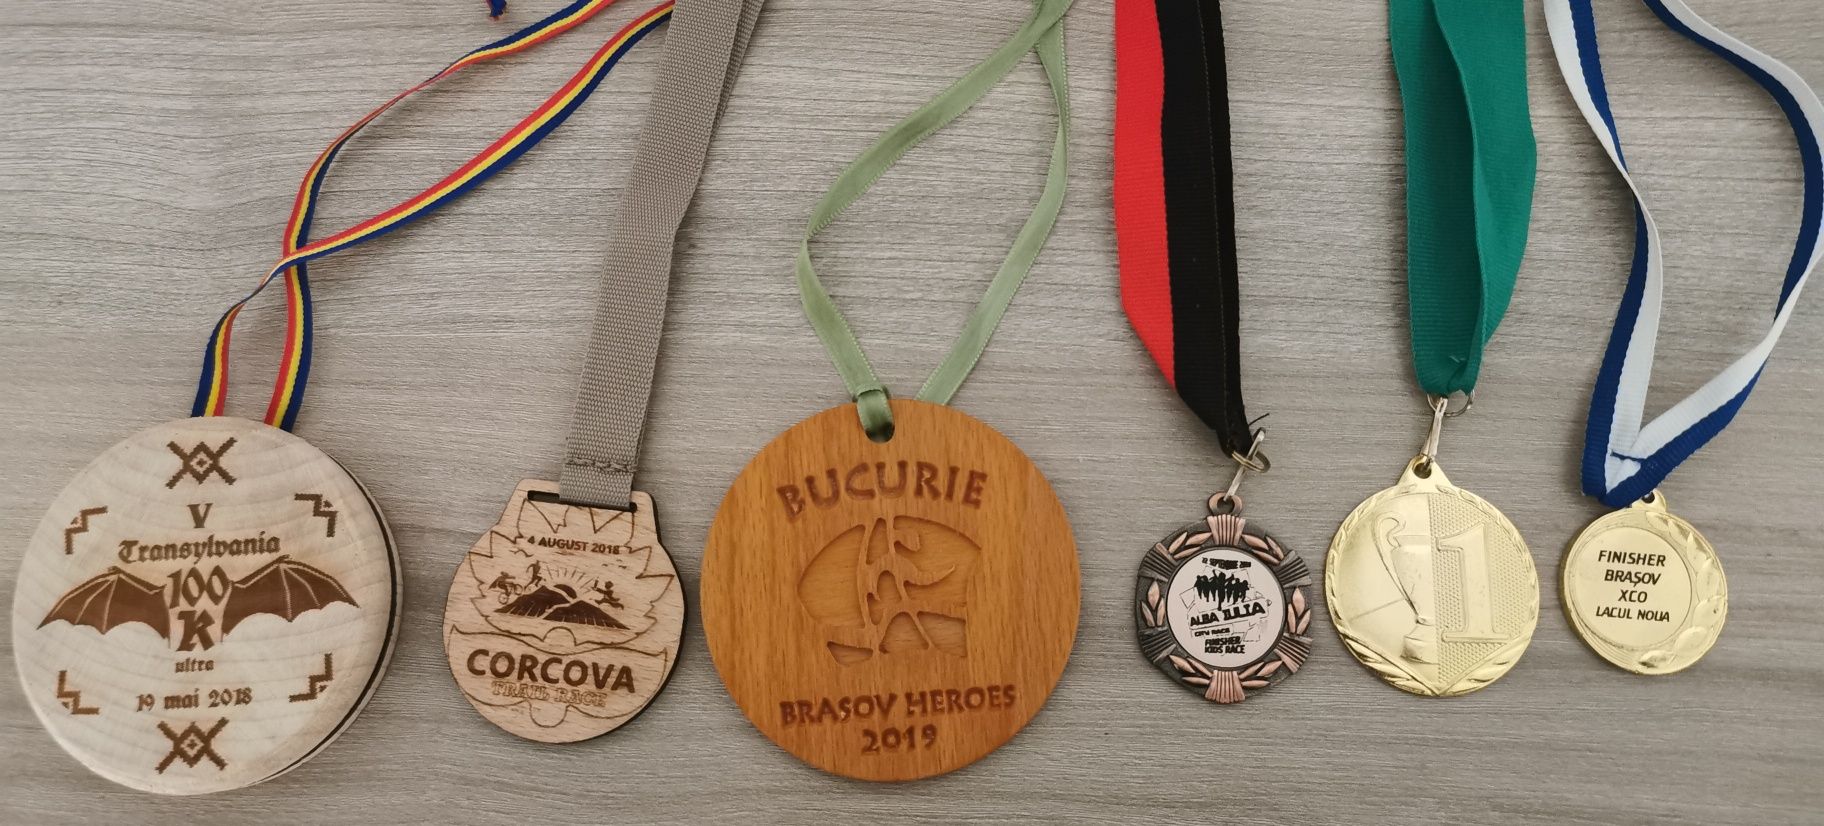 Medalii Finish de la anumite evenimente sportive de alergare